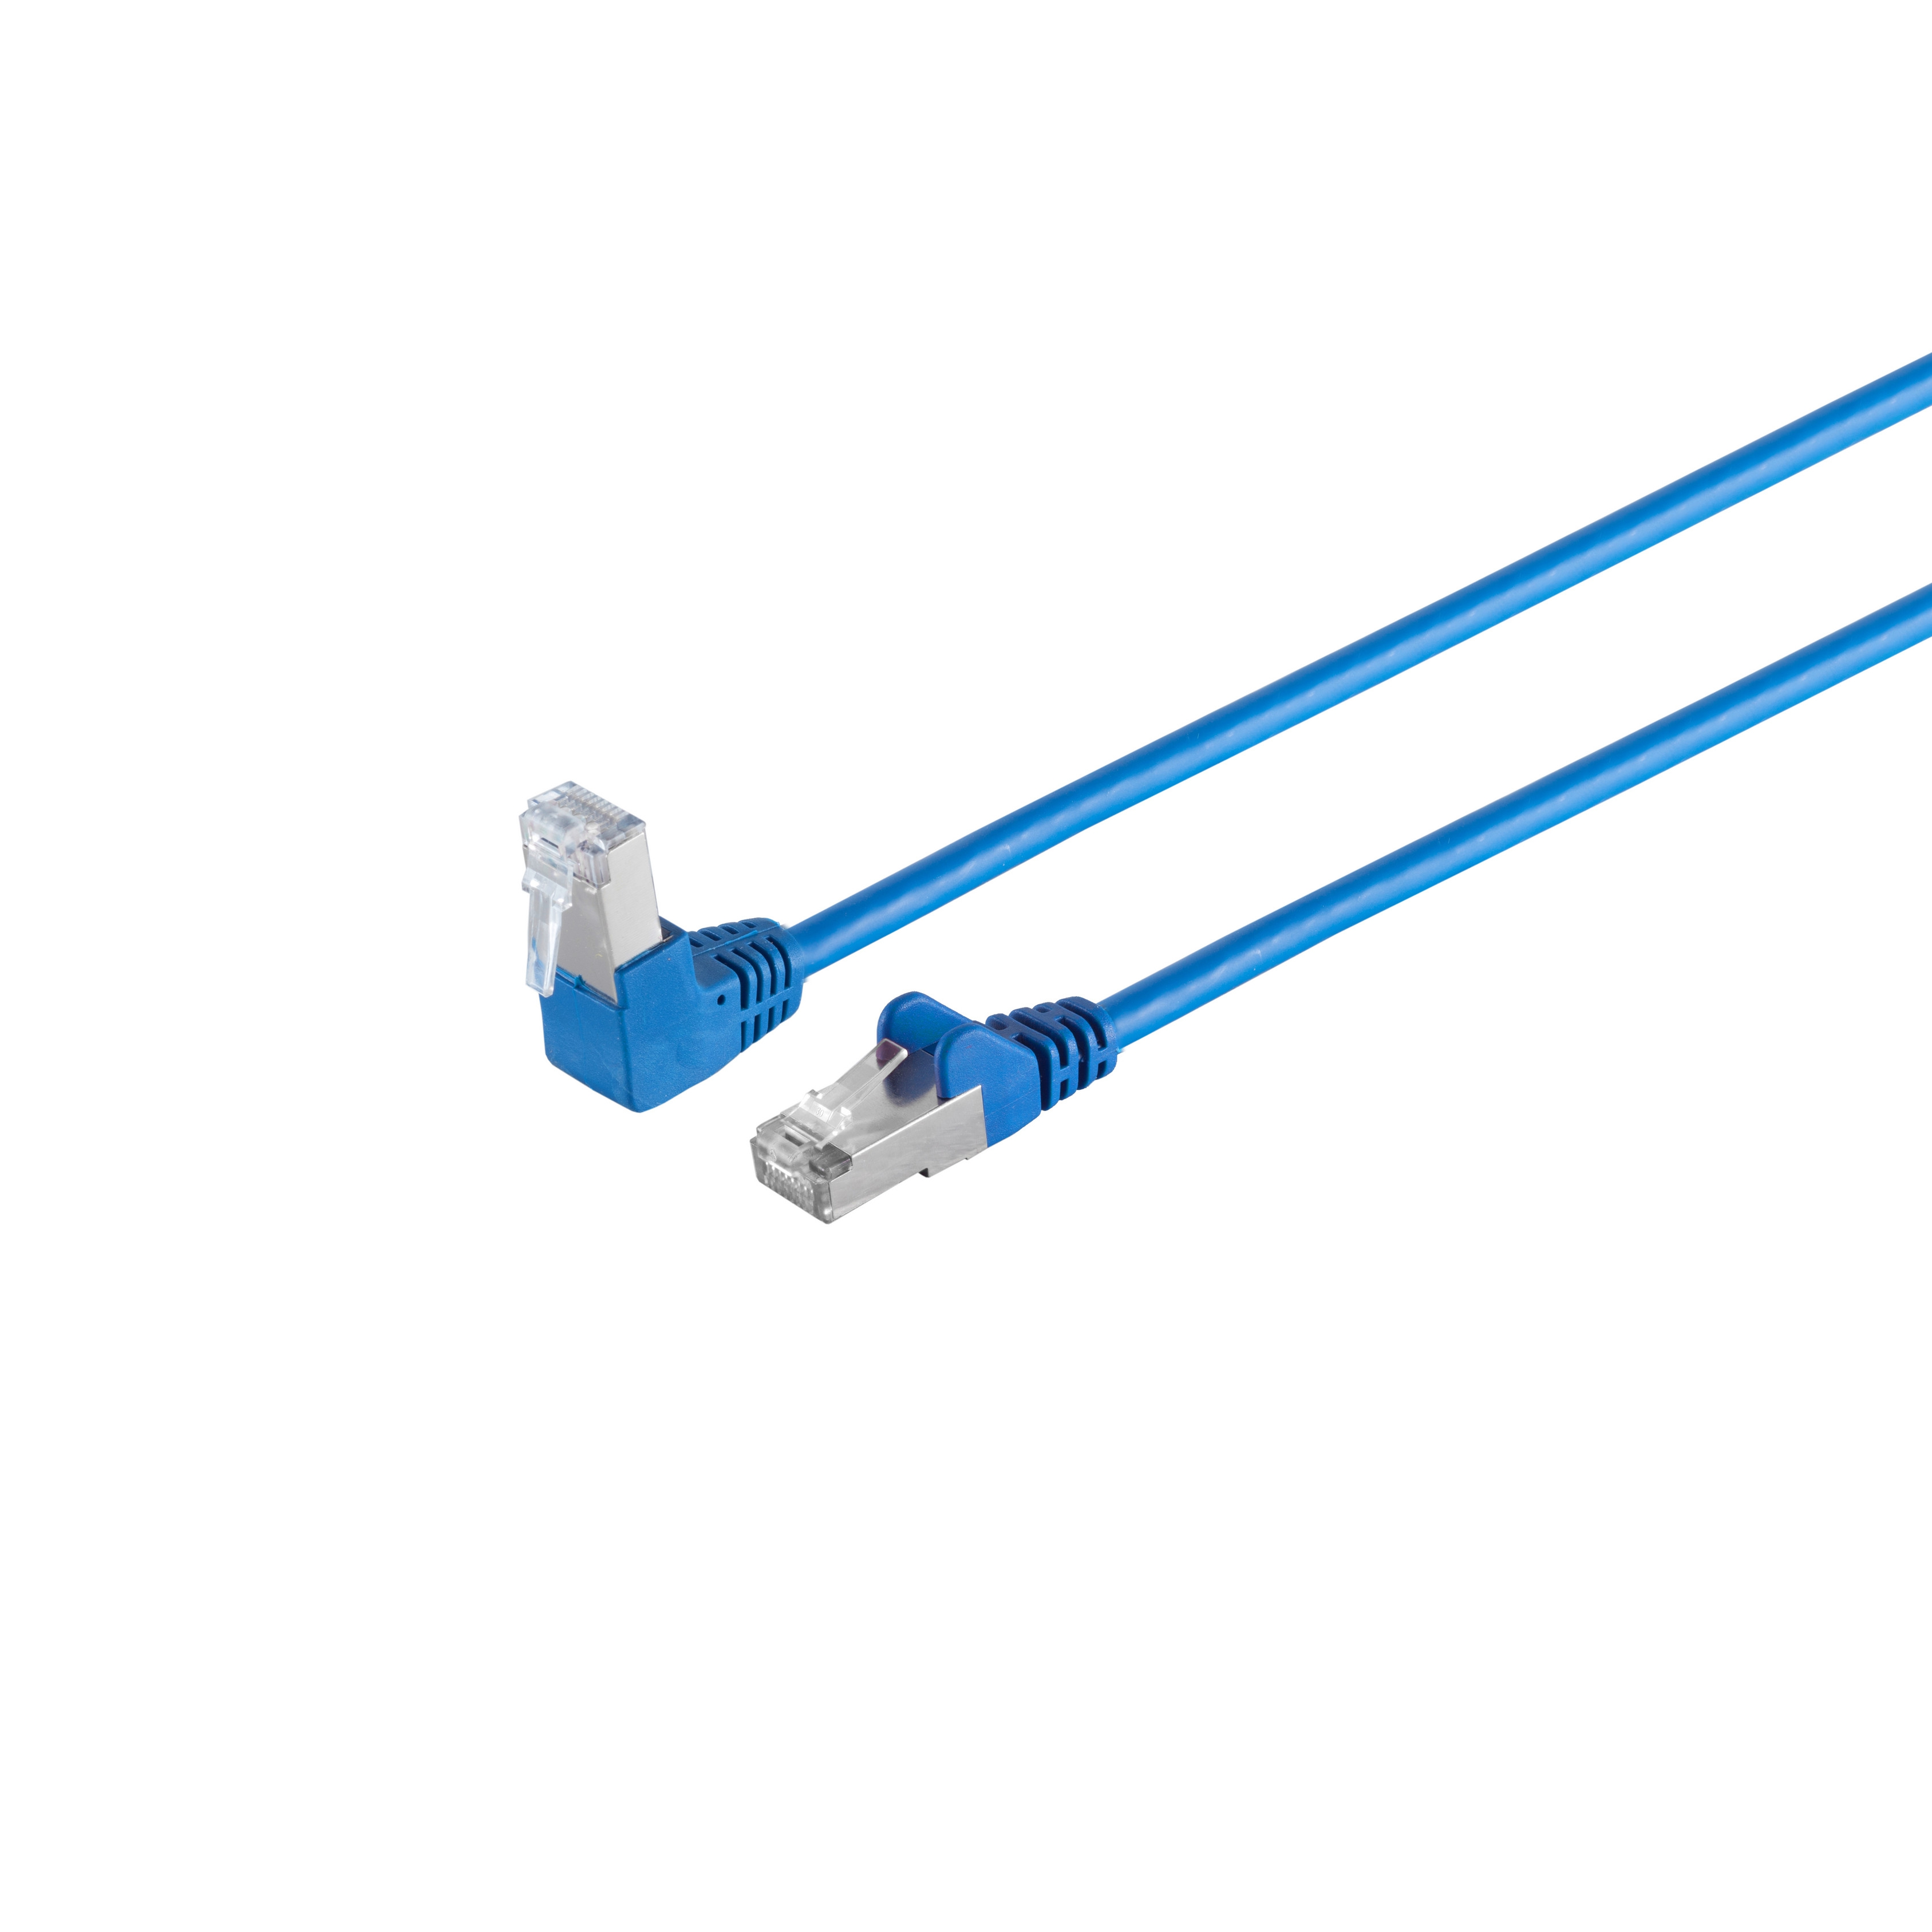 S/CONN MAXIMUM CONNECTIVITY Kabel cat Winkel-gerade 7,50 S/FTP RJ45, blau m 6 PIMF 7,5m, Patchkabel